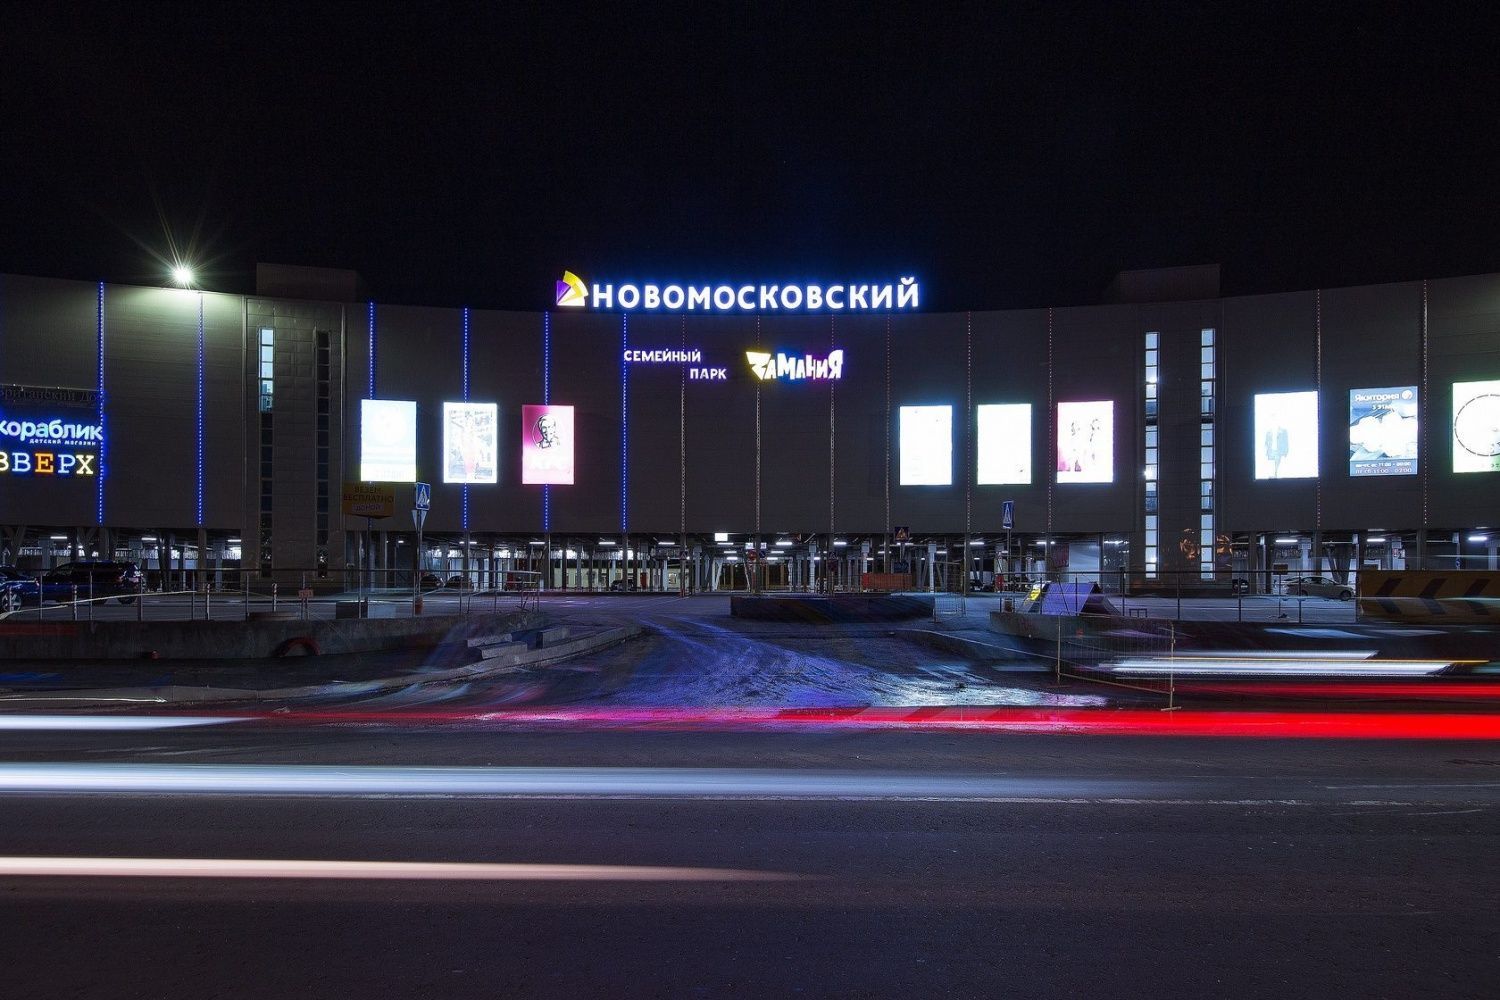 ТЦ «Новомосковский» - освещение торгового центра, Москва, 2016